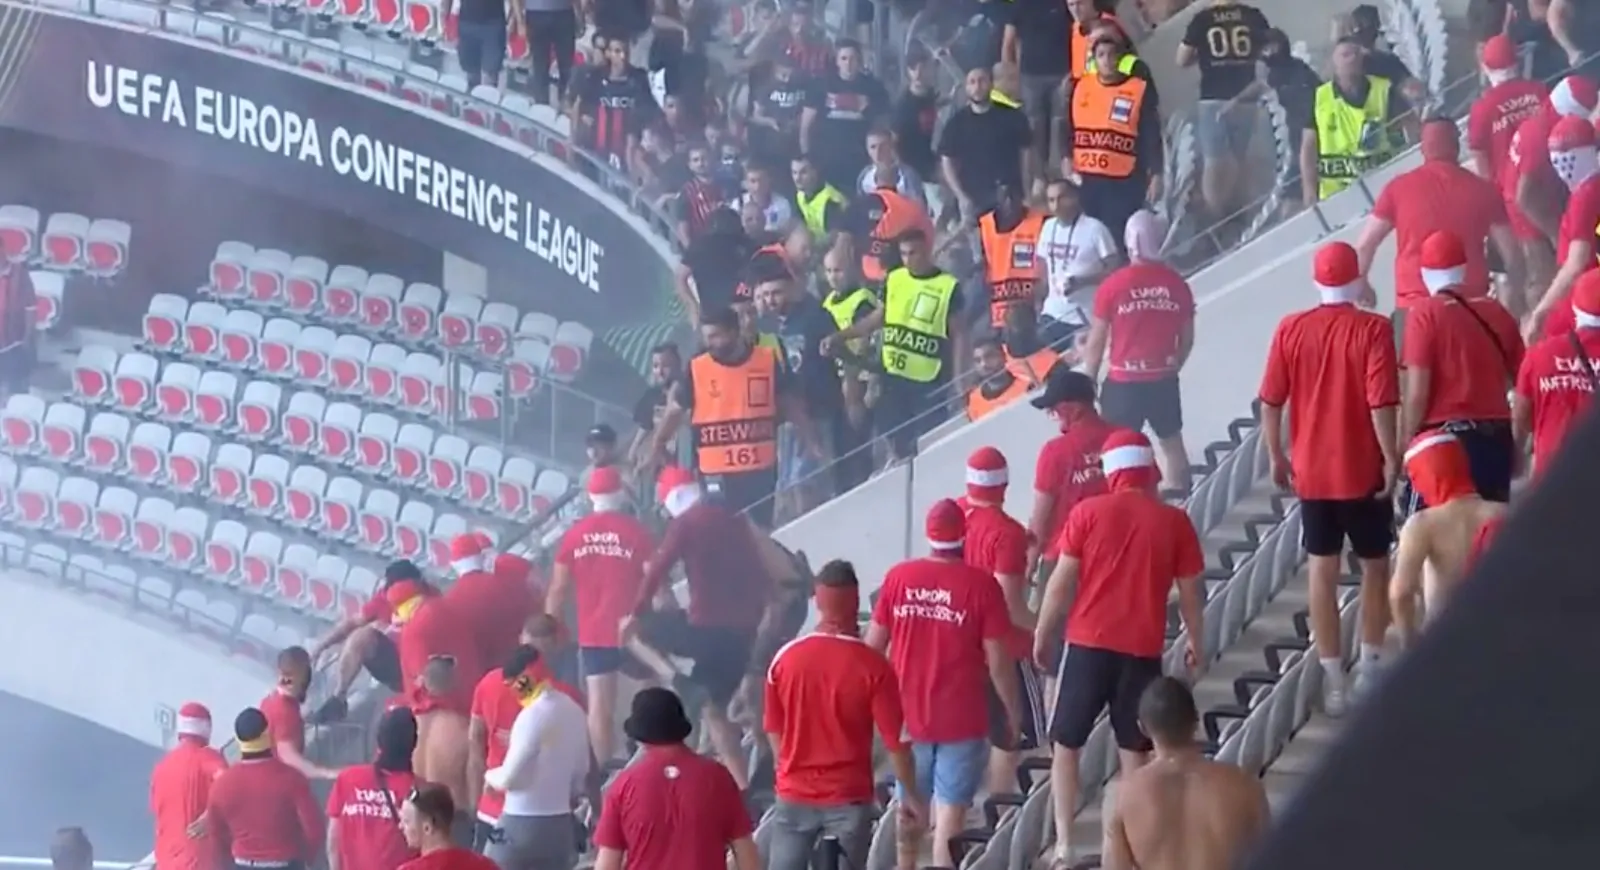 VIDEO – Nizza-Colonia, scontri violentissimi allo stadio e feriti gravi! La decisione sulla partita